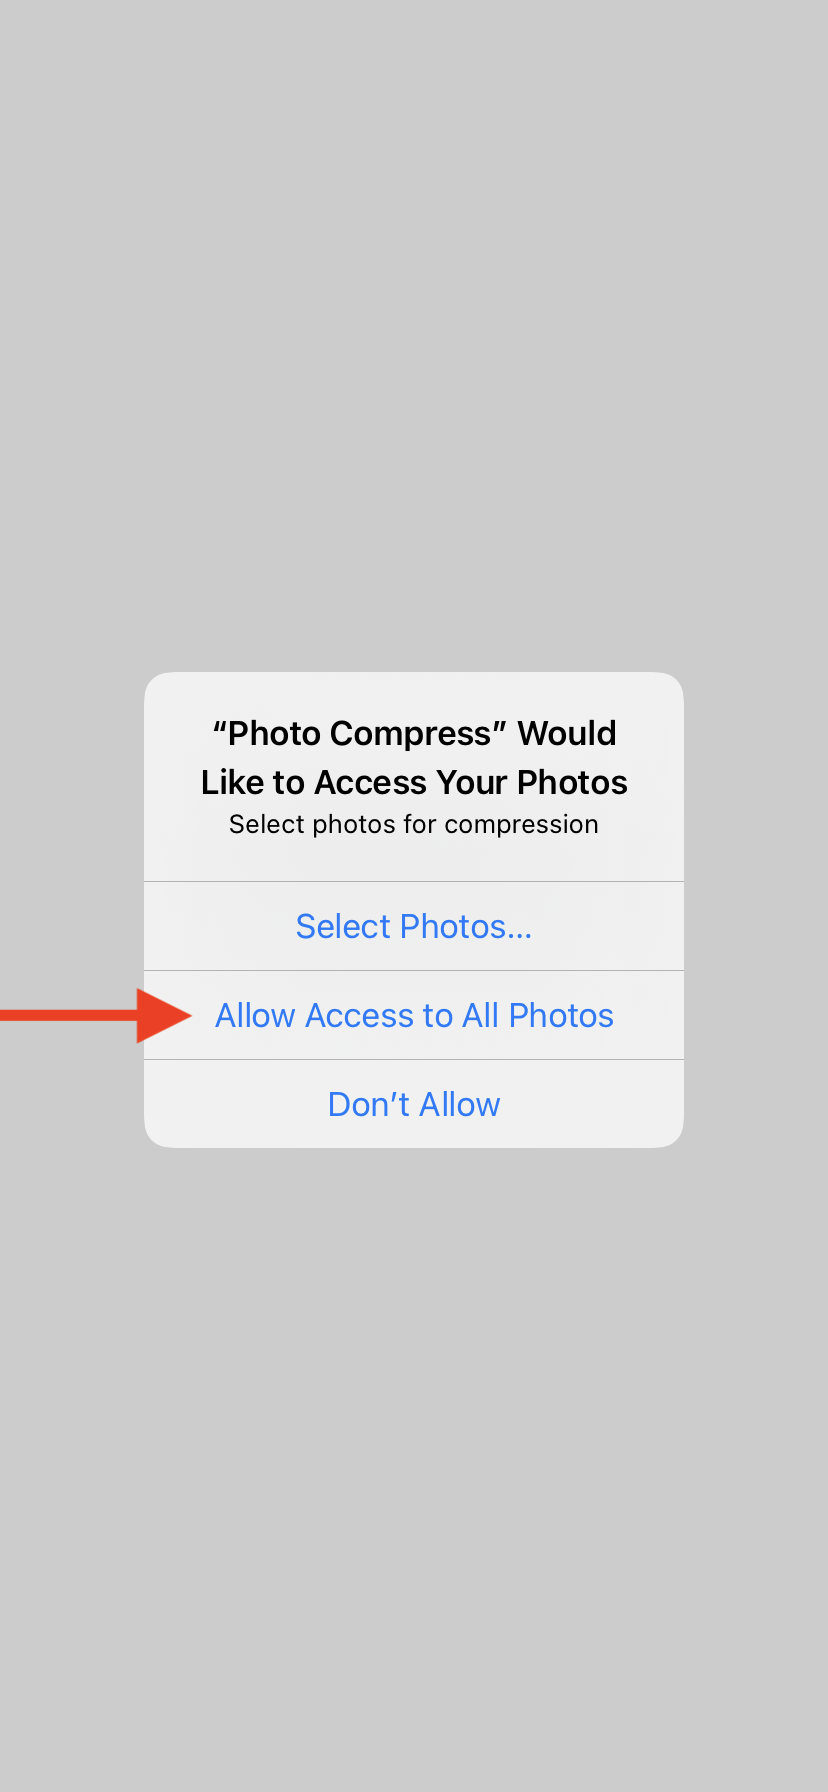 How To Compress Photos Using "Photo Compress" App: Step 3